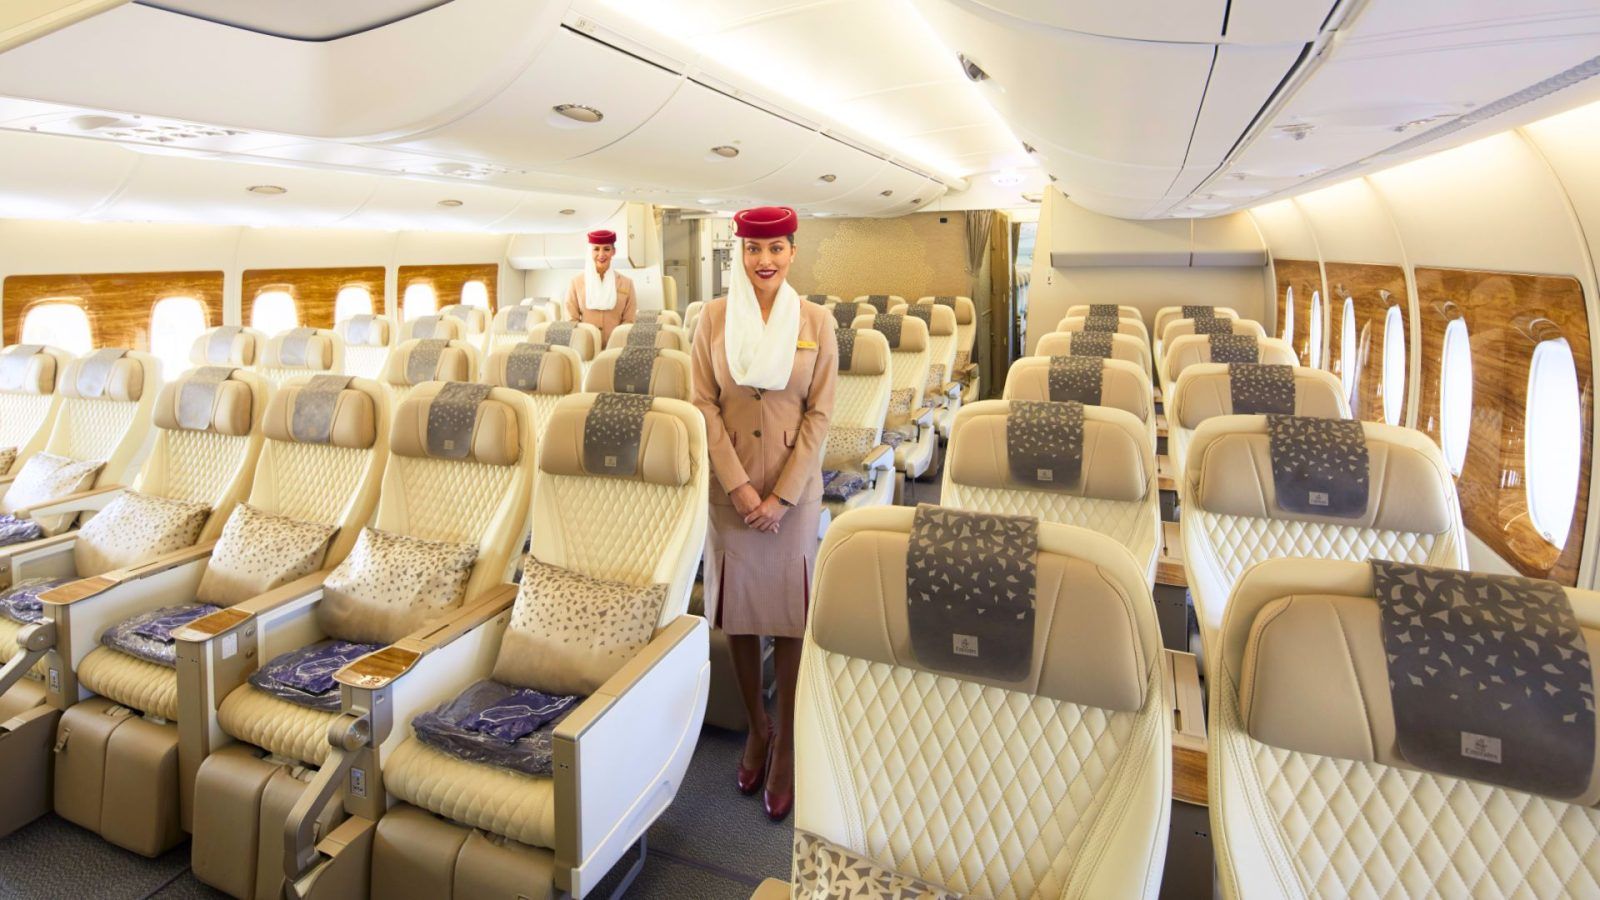 Virgin Atlantic Premium Cabins And Seats